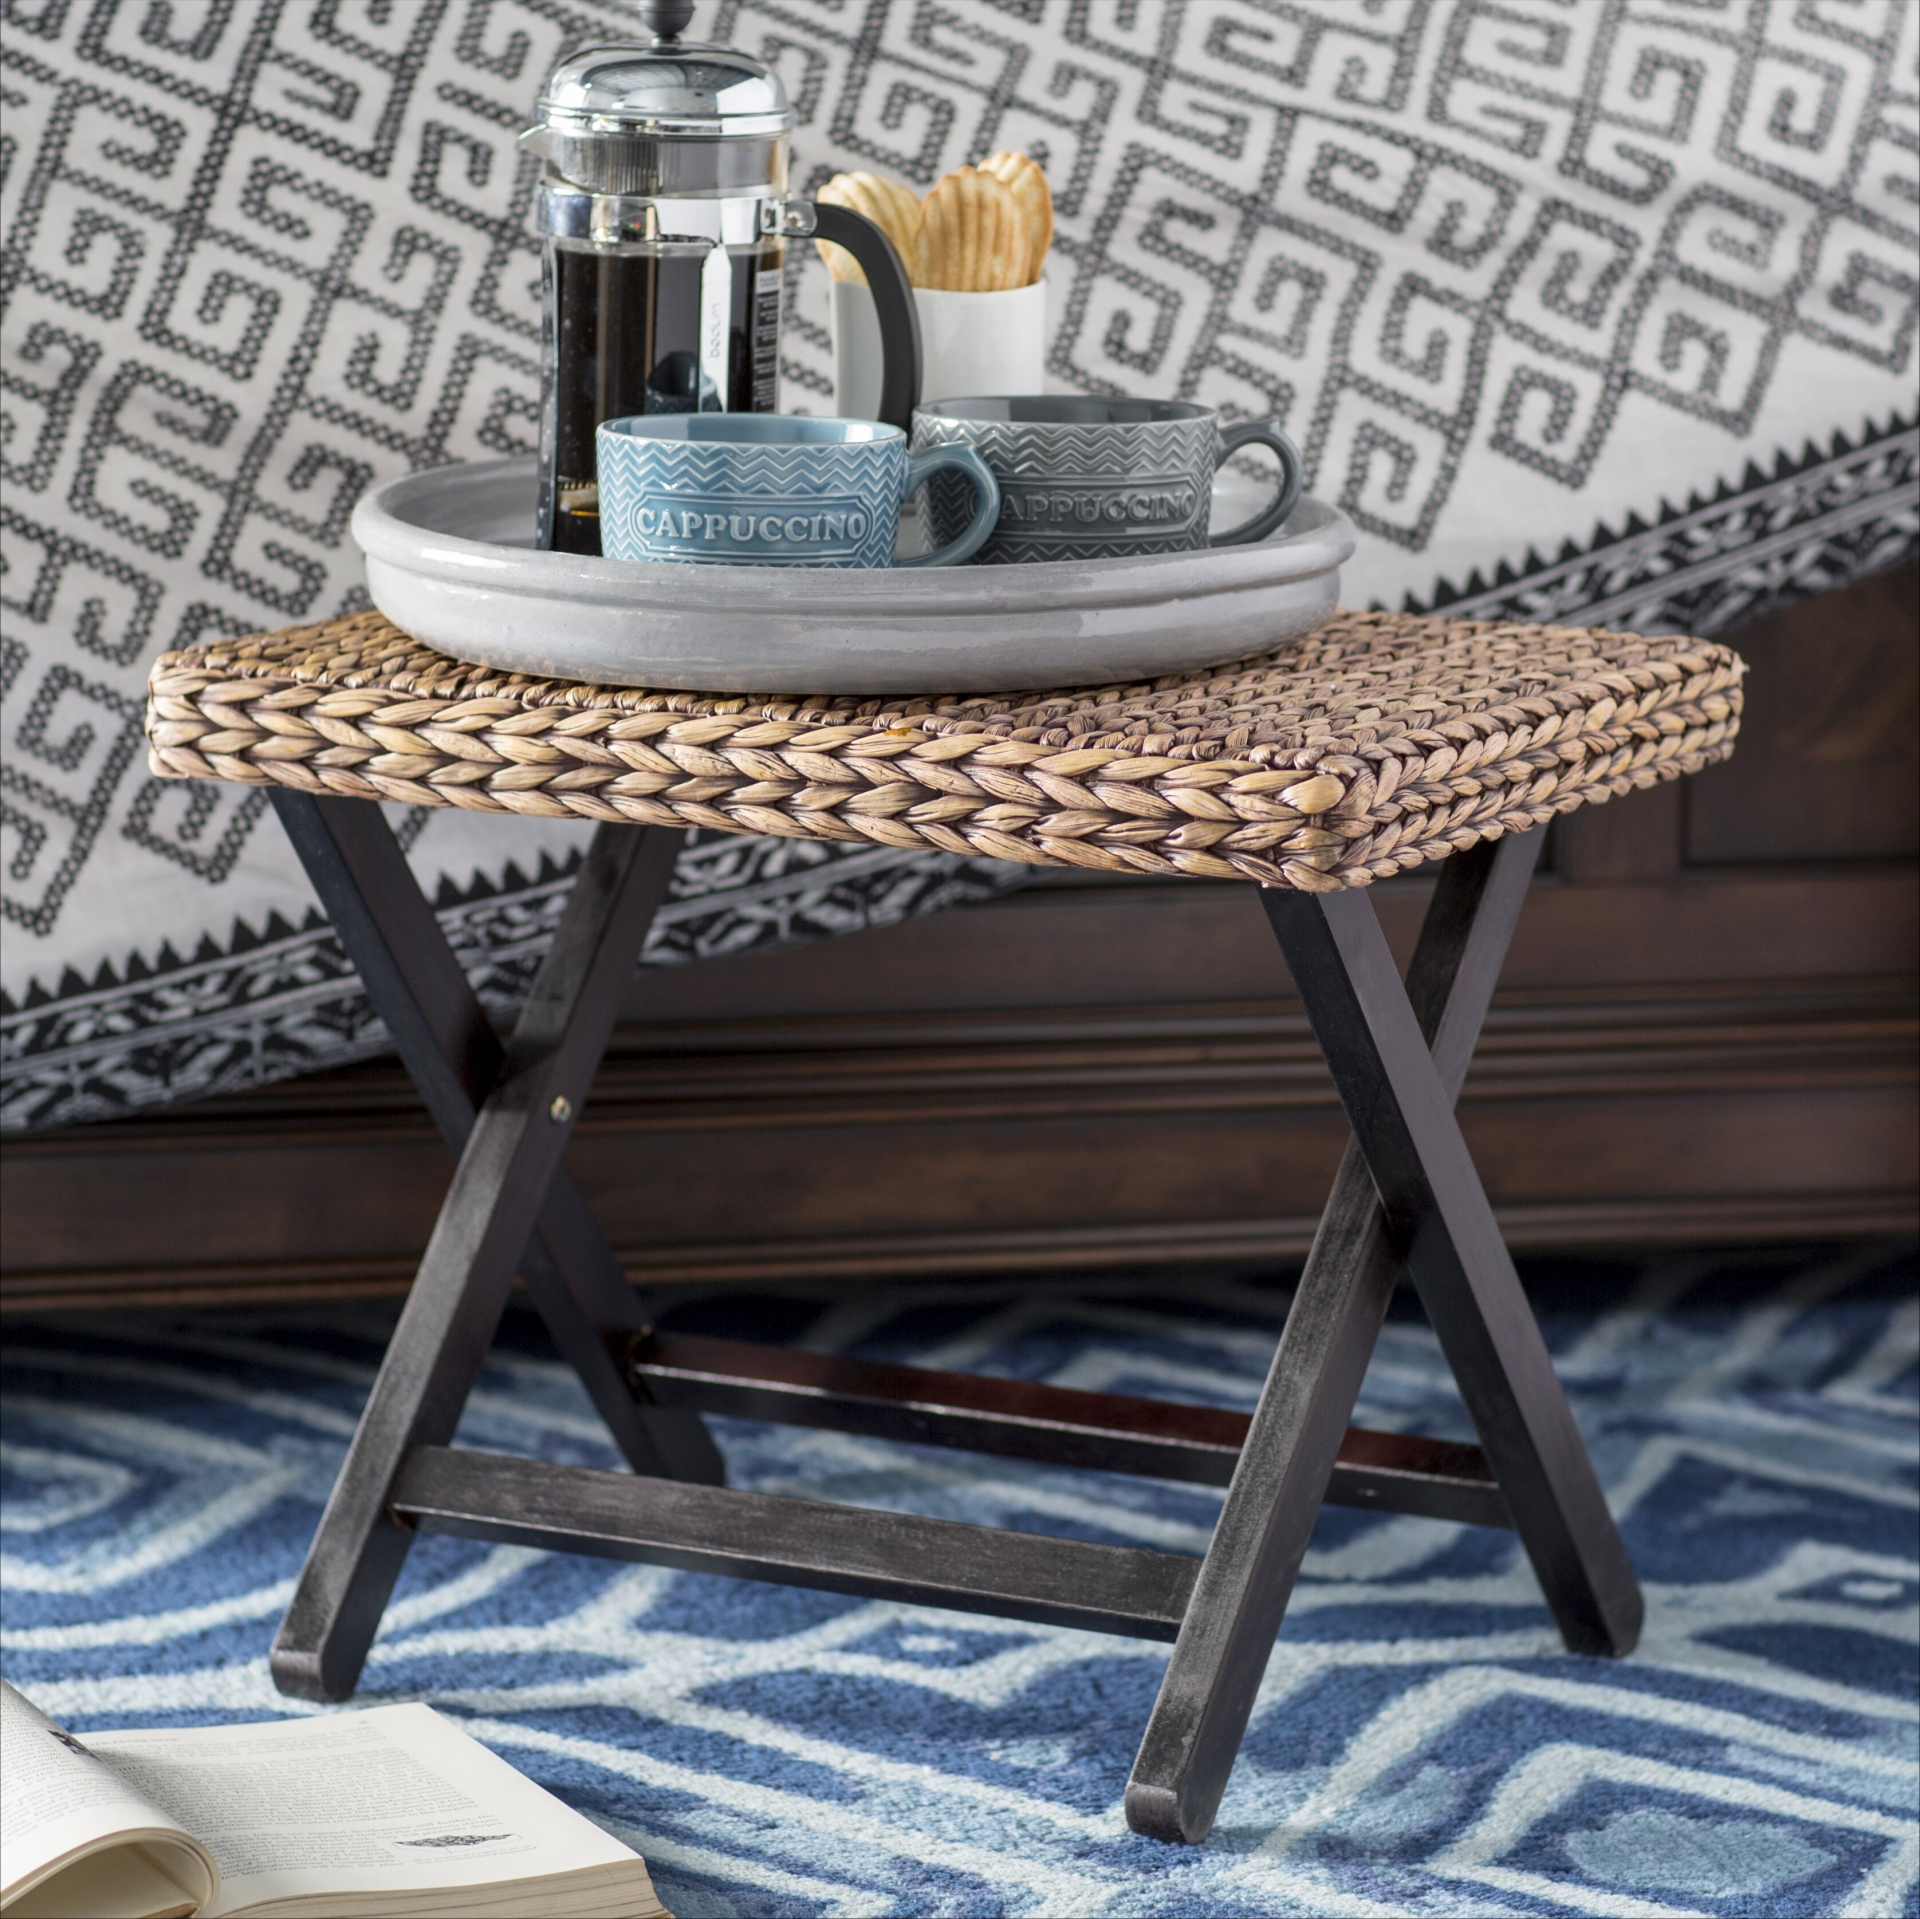 Chiếc ghế hình chữ nhật với bề mặt bằng lục bình, chân ghế bằng gỗ sơn đen sang chảnh. Và điều quan trọng hơn cả là nó có thể xếp gọn lại để dễ dàng sử dụng linh hoạt trong nhiều không gian nhà ở, từ phòng khách, bếp cho đến phòng ngủ.